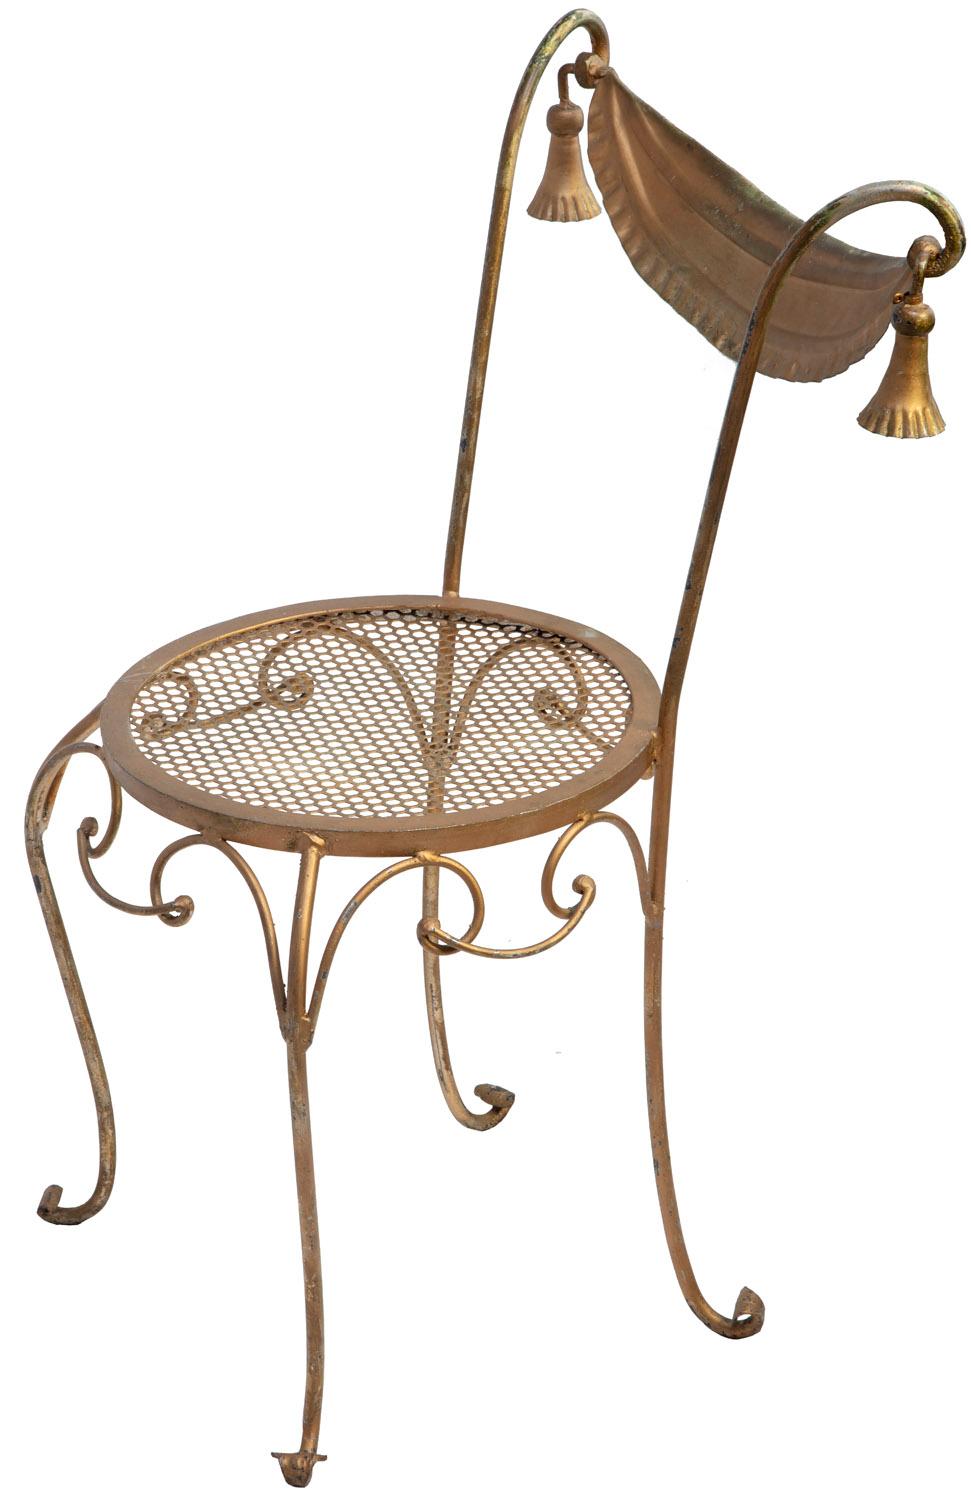 Chaise en fer forgé peint en or avec siège à motif nid d'abeille et glands.